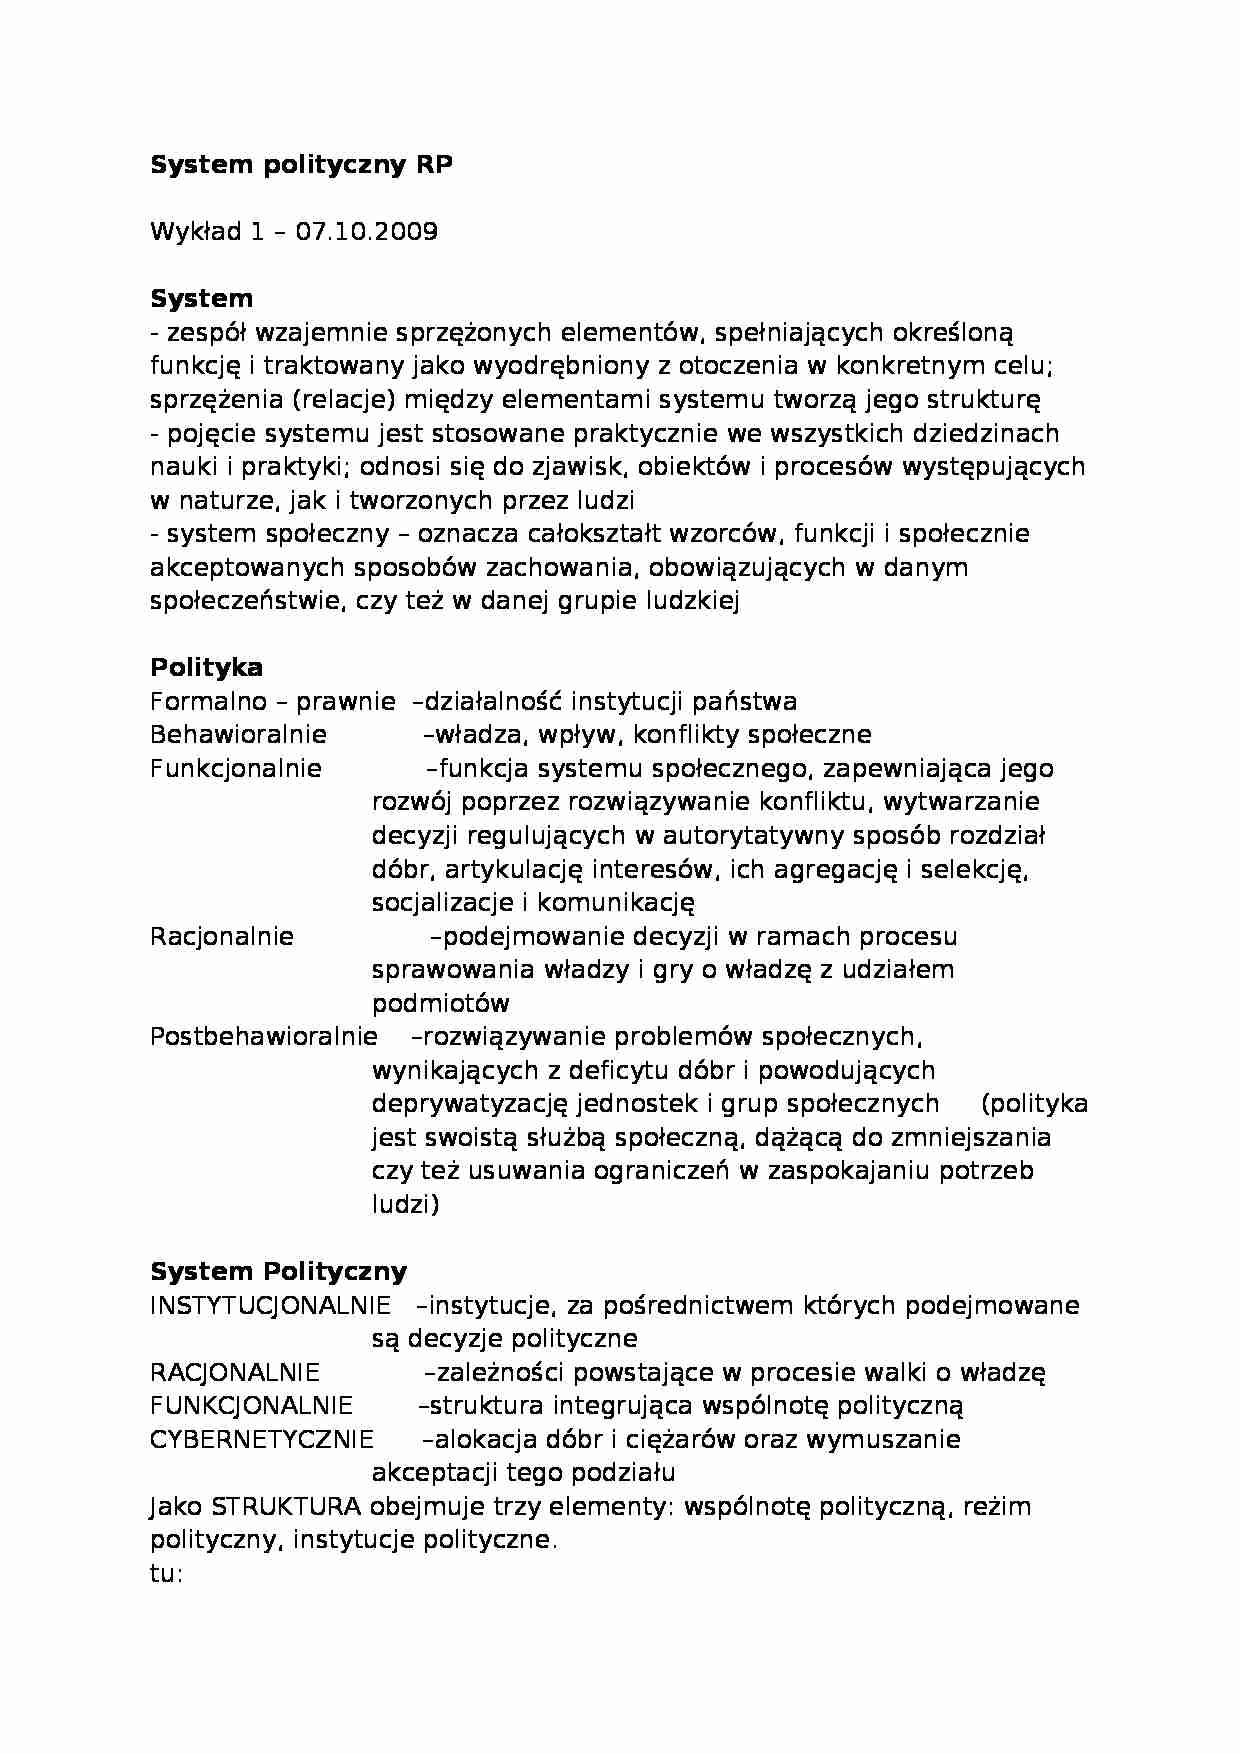 System polityczny Rzeczypospolitej Polskiej - strona 1